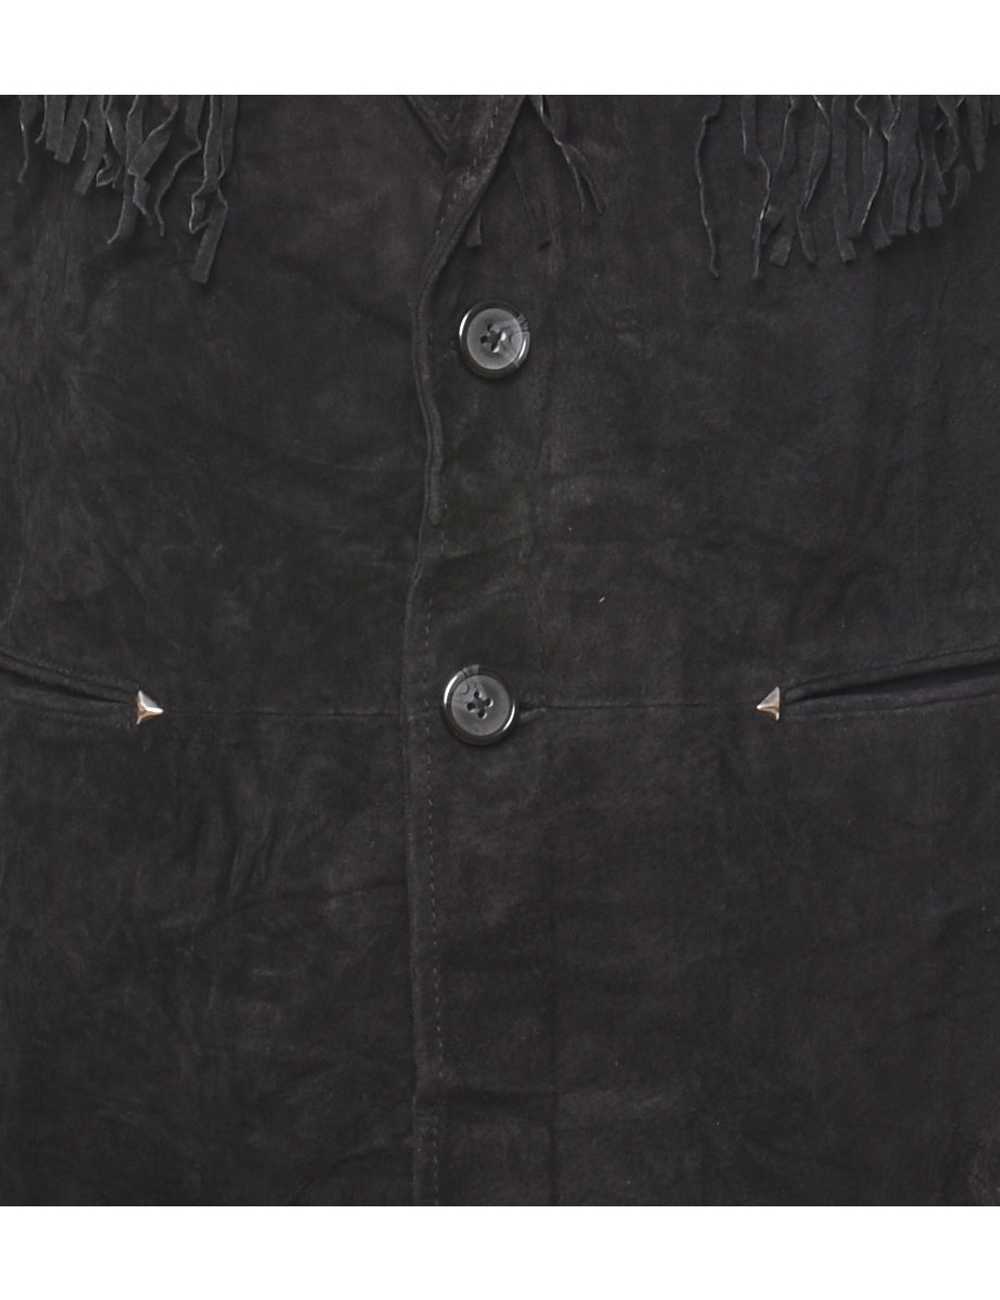 Black Classic Suede Fringed Jacket - M - image 3